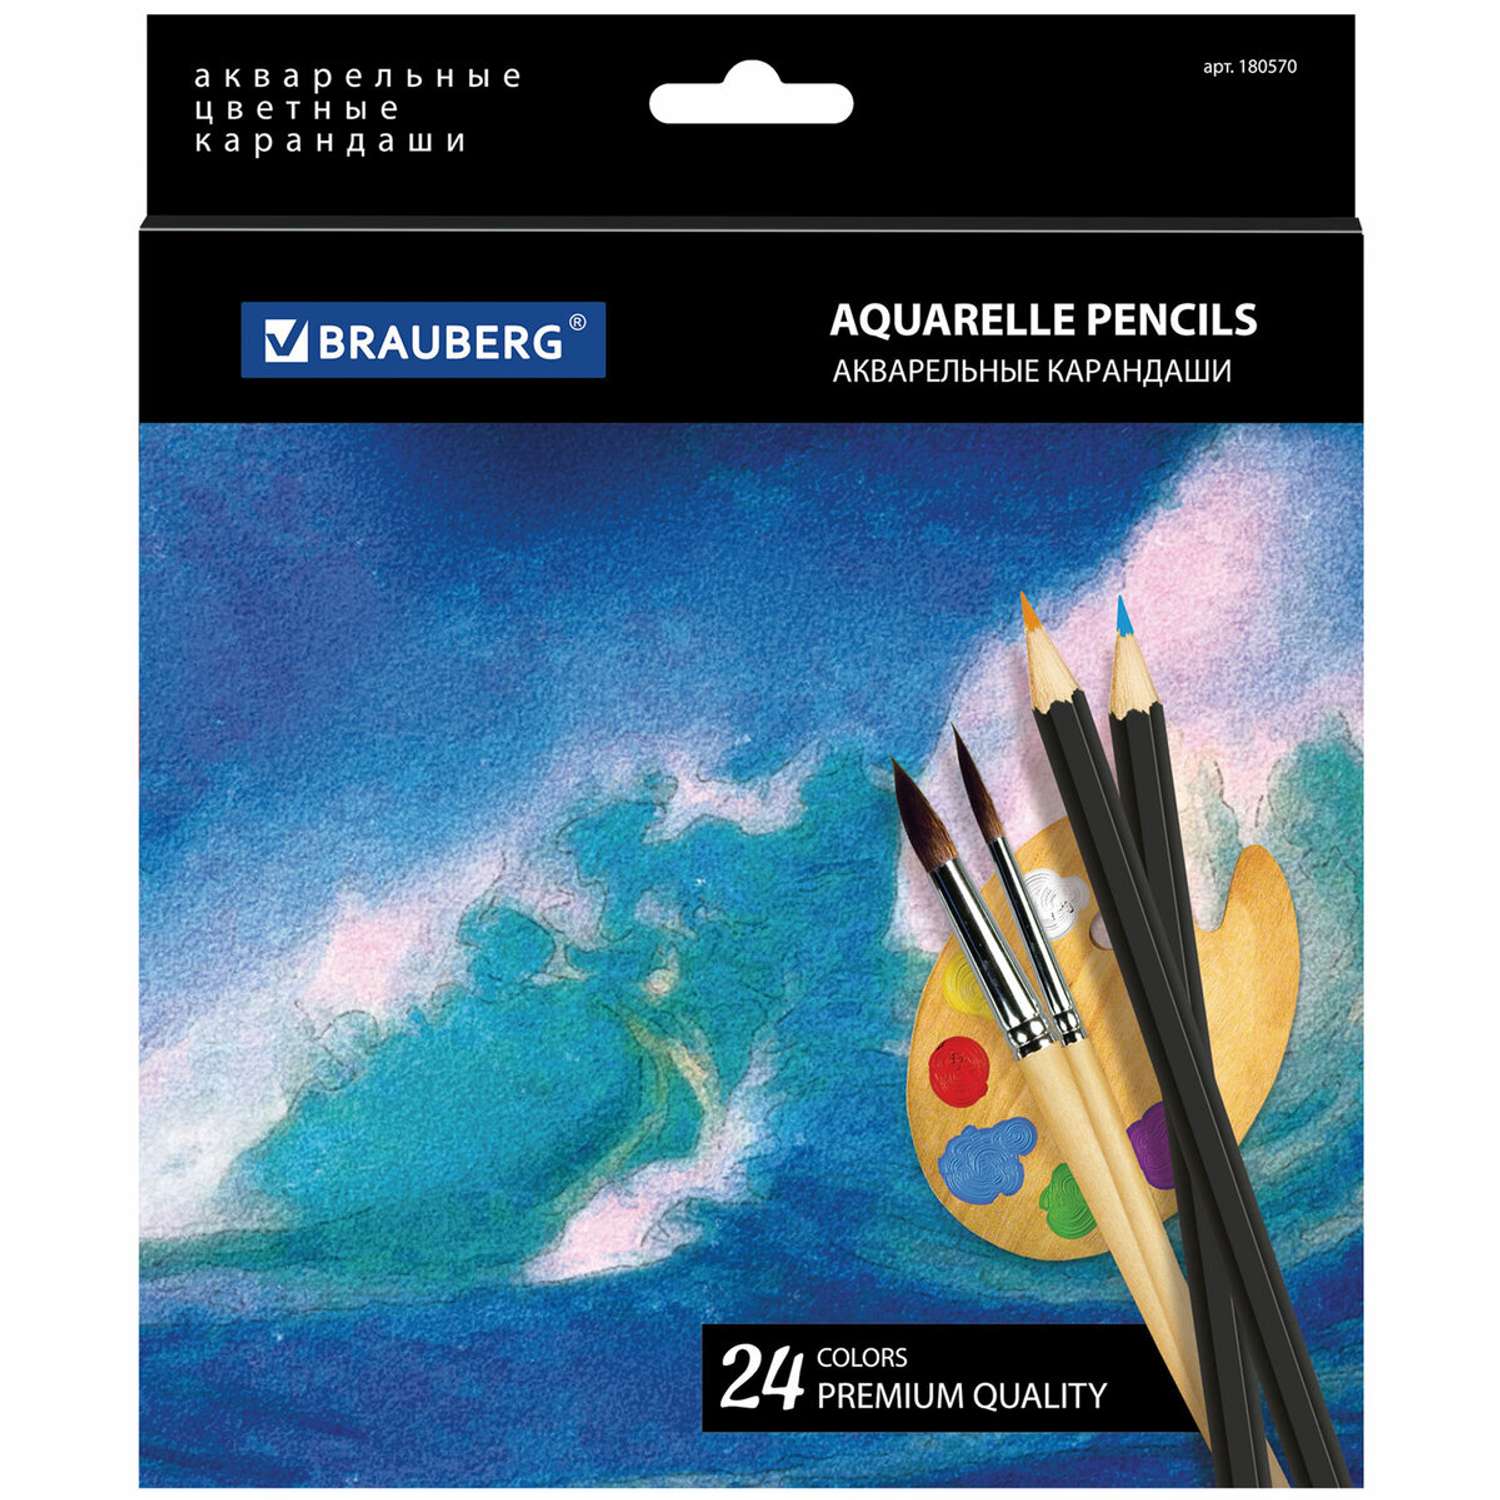 Карандаши цветные Brauberg акварельные Artist line 24 цвета высшее качество - фото 7